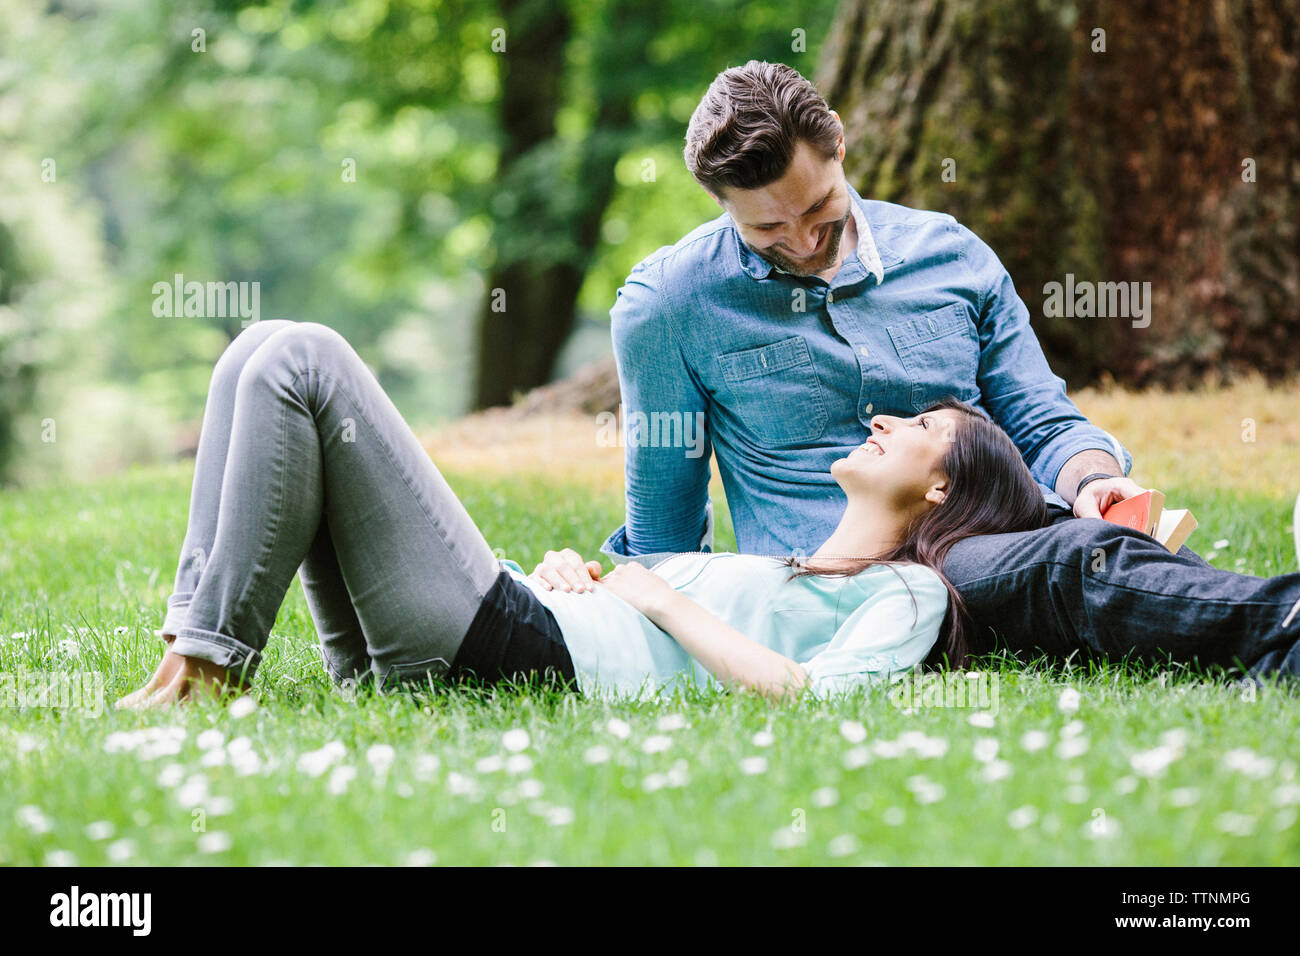 Happy girlfriend lying on boyfriend's lap in park Stock Photo